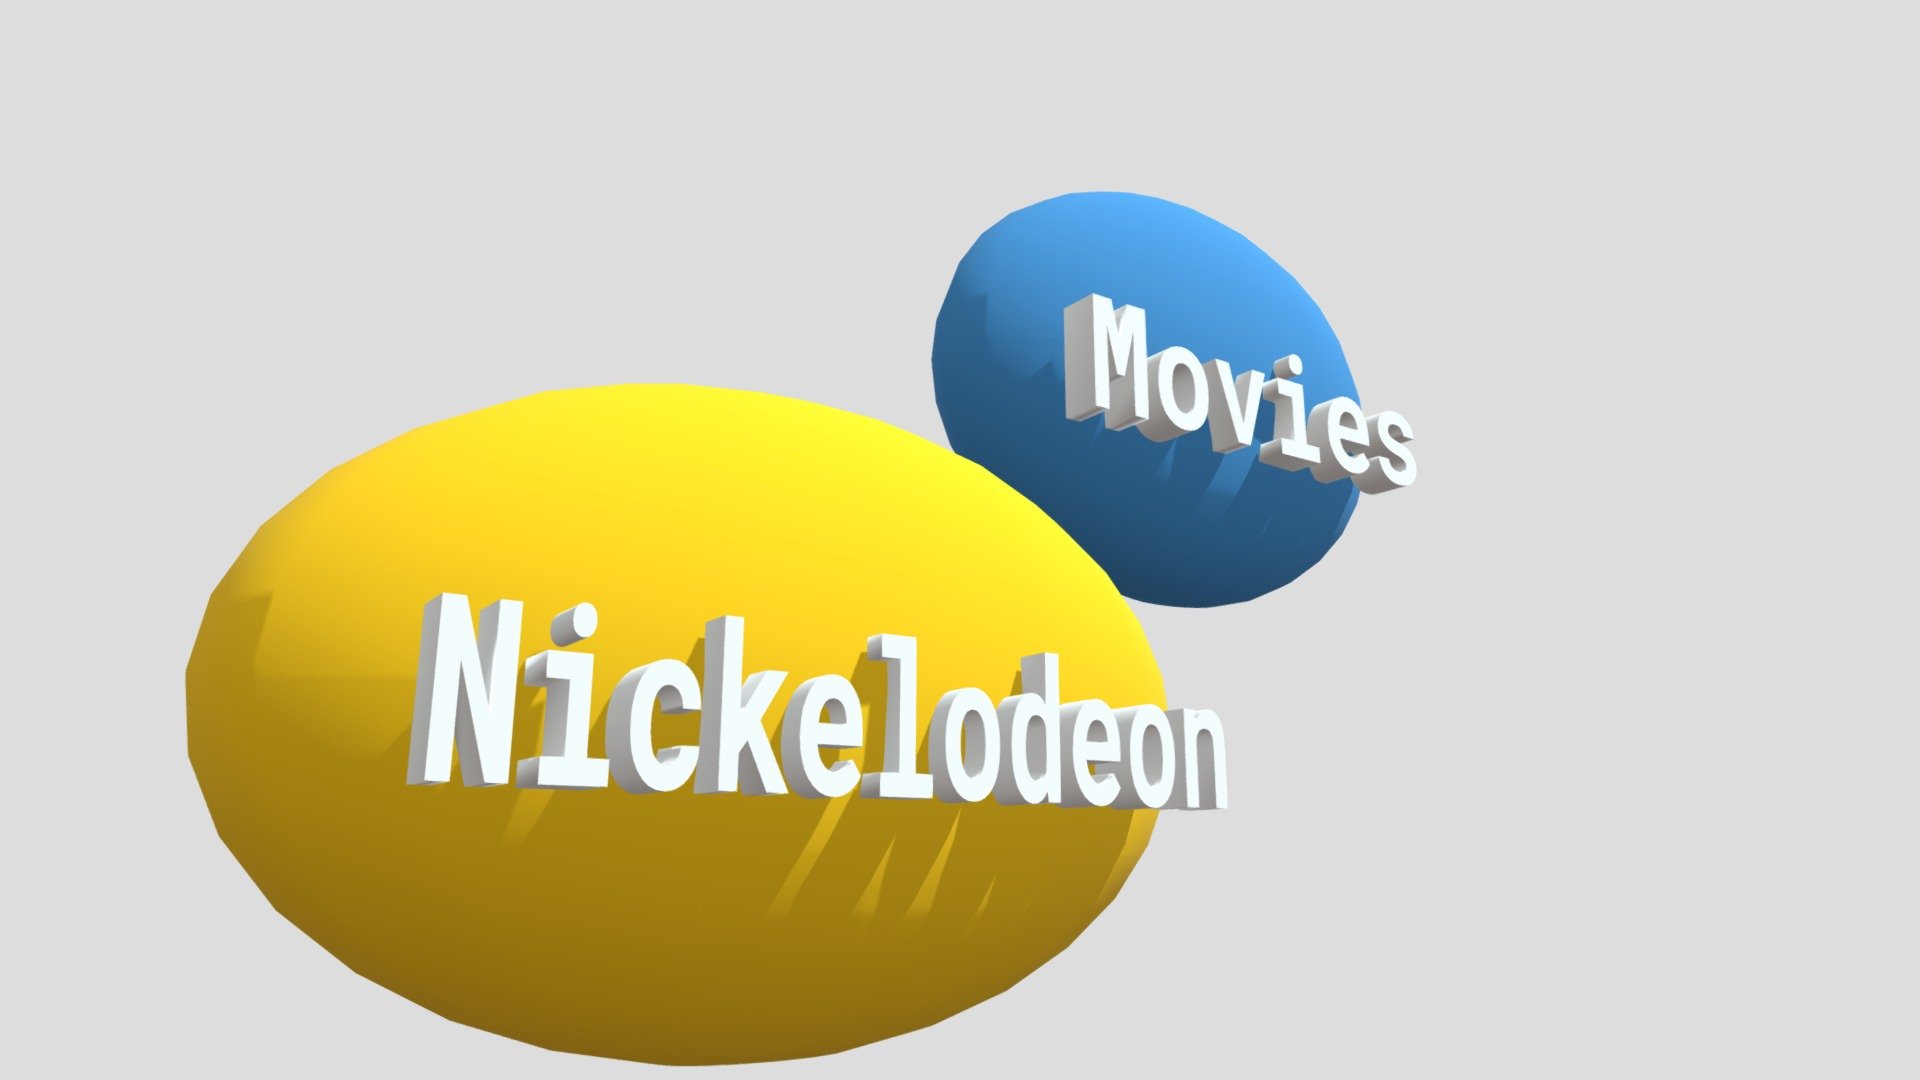 Nickelodeon Movies Logo 1998